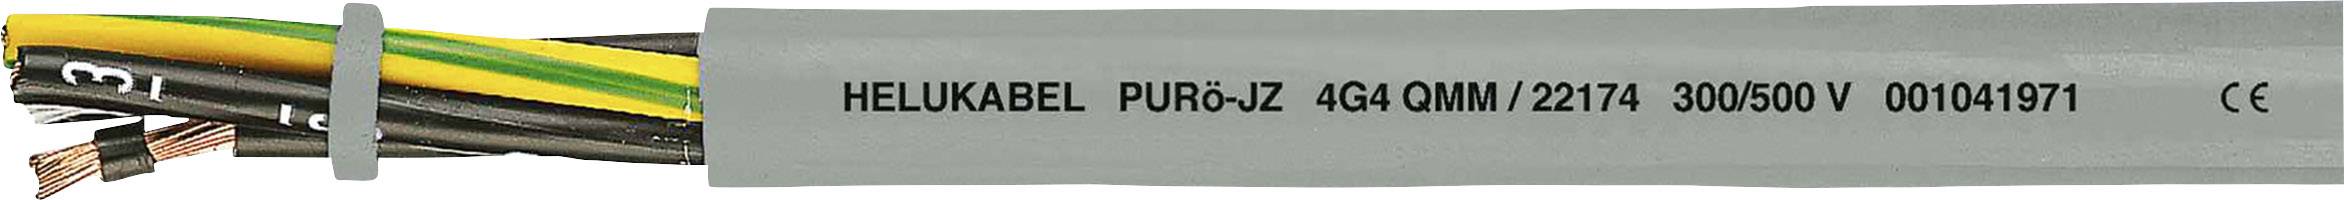 HELUKABEL PURö-JZ Steuerleitung 7 G 1.50 mm² Grau 22152-1000 1000 m